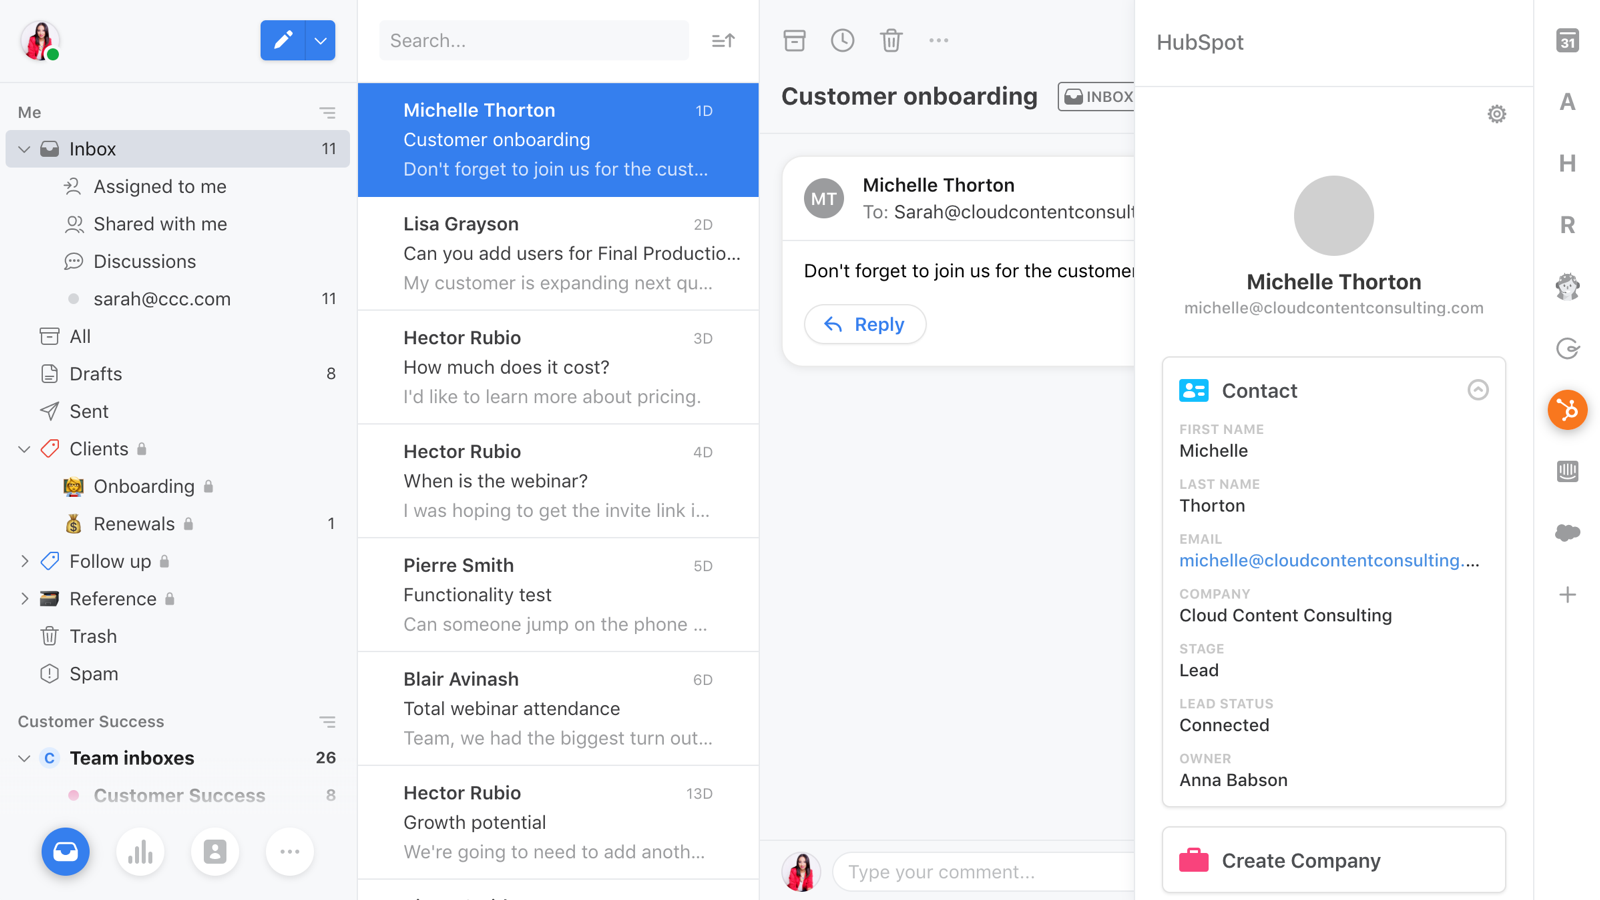 HubSpot Community - HubSpot Integration for Native Apple Mail App - HubSpot  Community